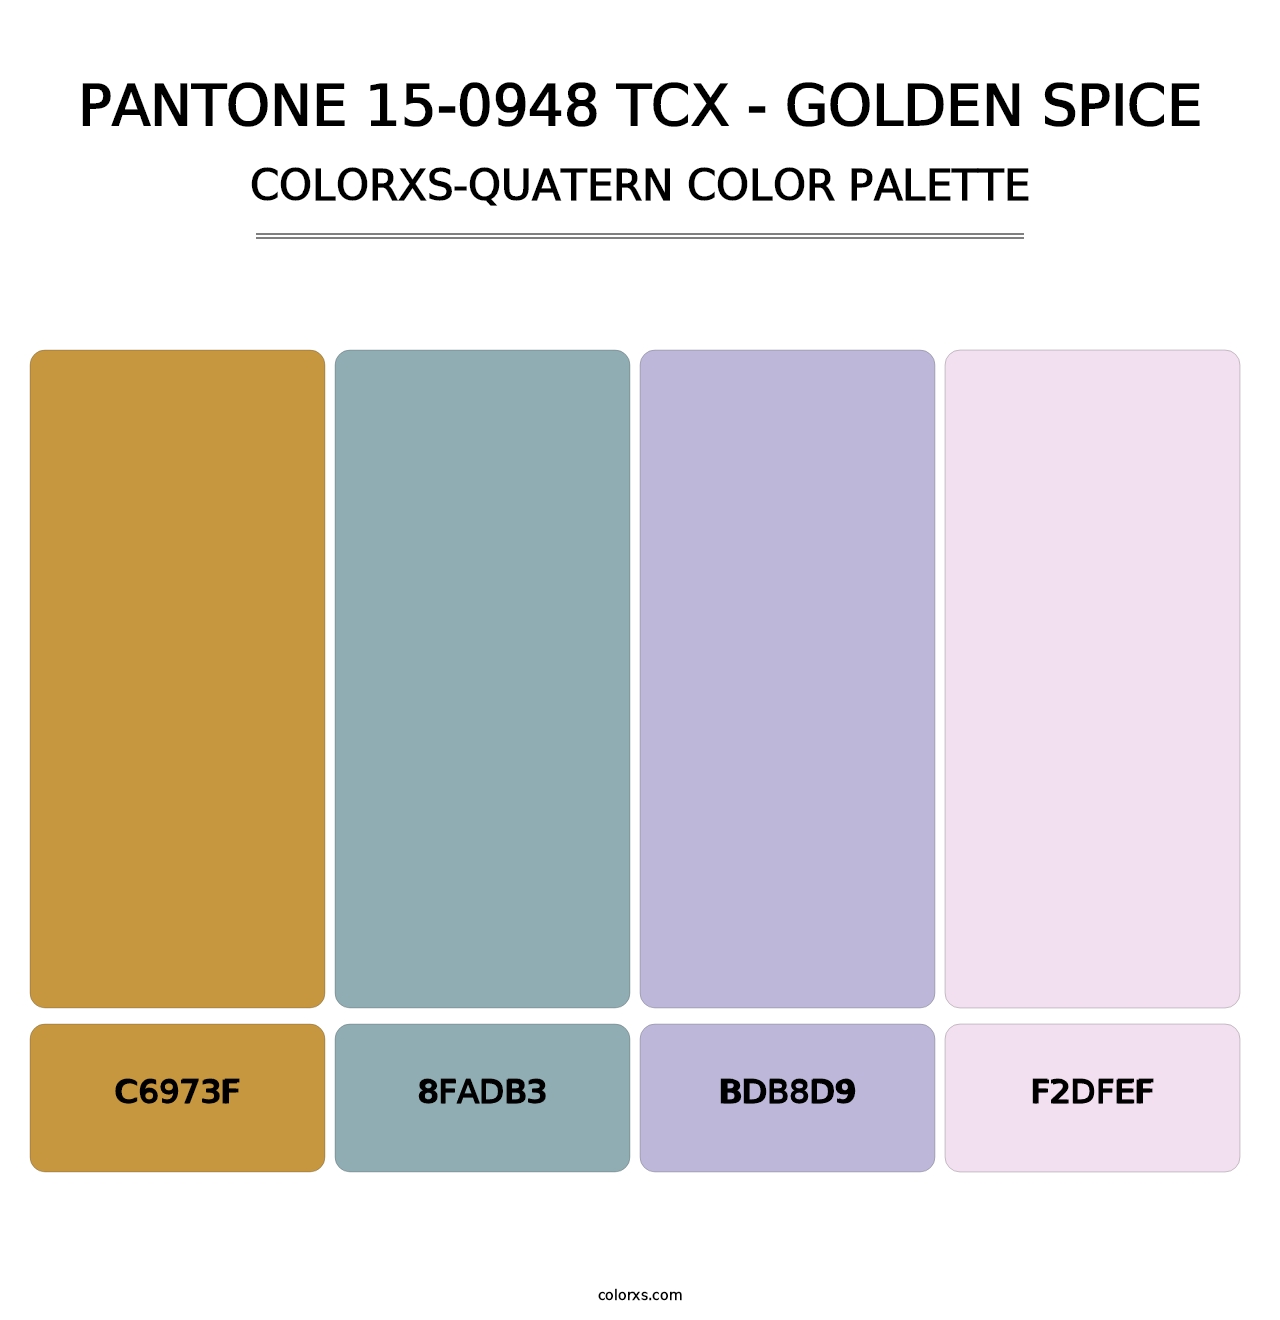 PANTONE 15-0948 TCX - Golden Spice - Colorxs Quatern Palette